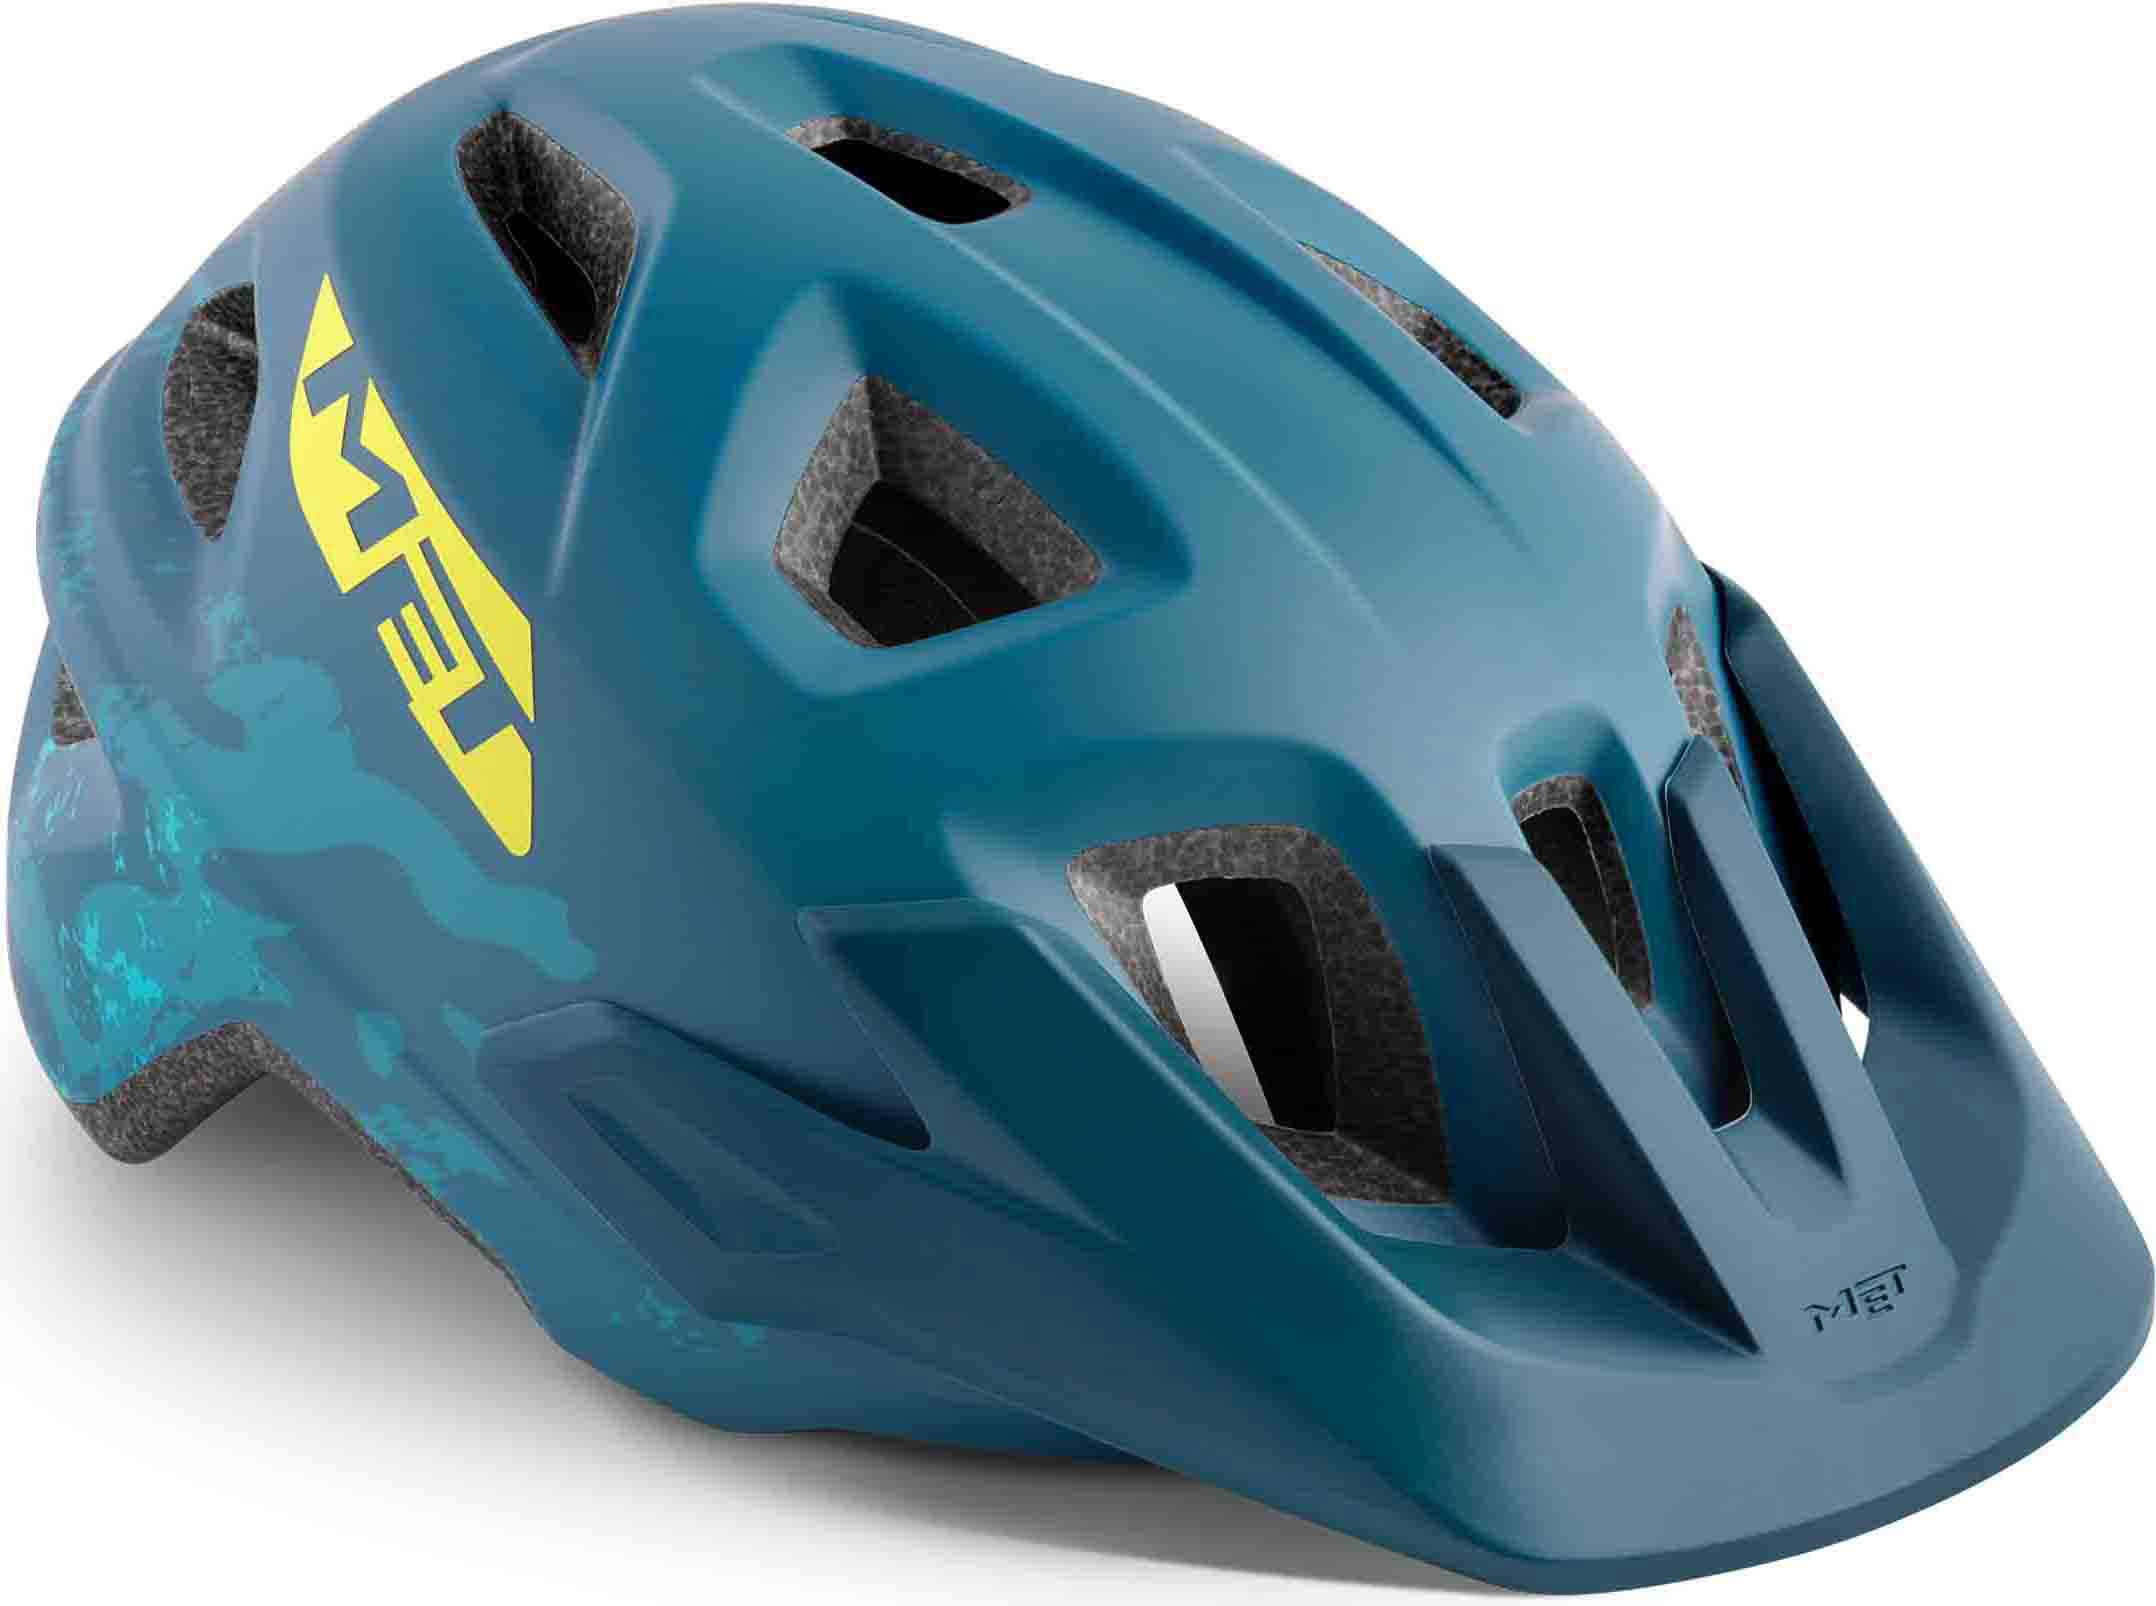 Met Eldar Youth Cycle Helmet Blue Camo